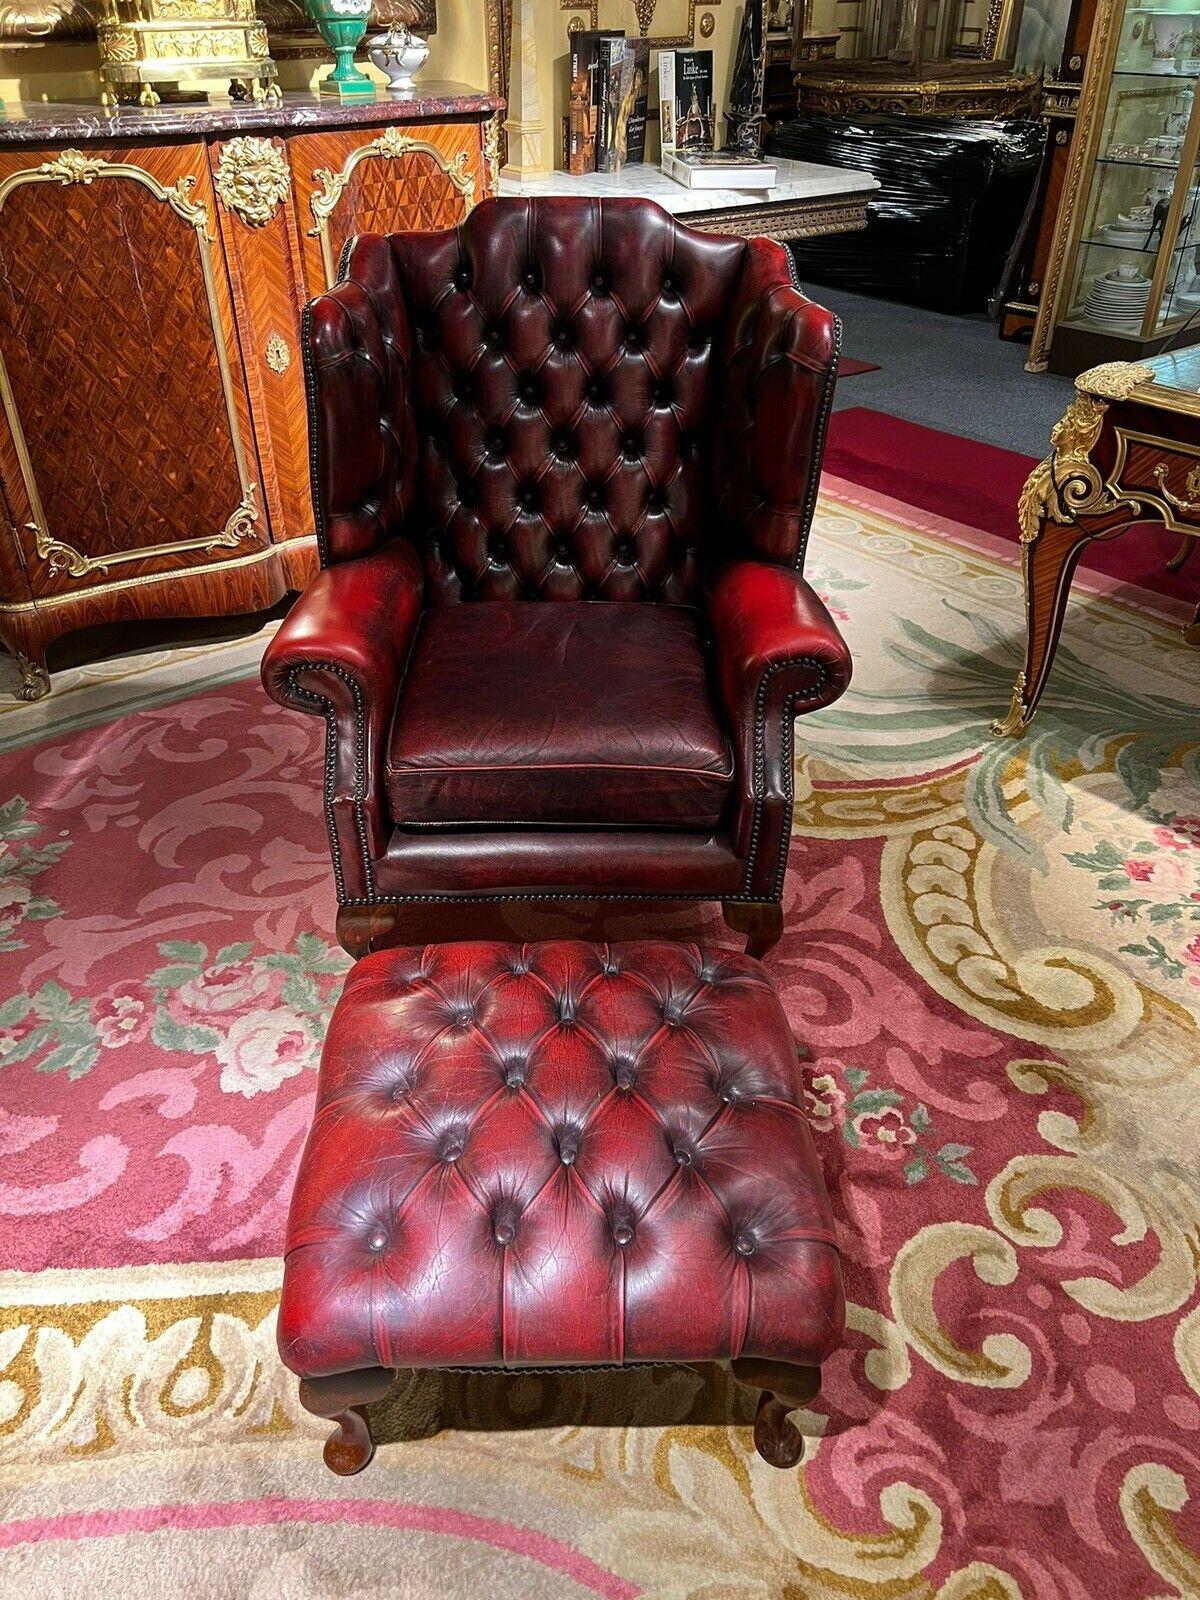 Nous sommes ravis d'offrir à la vente ce fauteuil et pouf Chesterfield vintage en cuir Oxblood. Une belle paire, pleine de charme et de caractère vintage, nous les avons légèrement restaurés pour inclure un nettoyage en profondeur à la cire et au